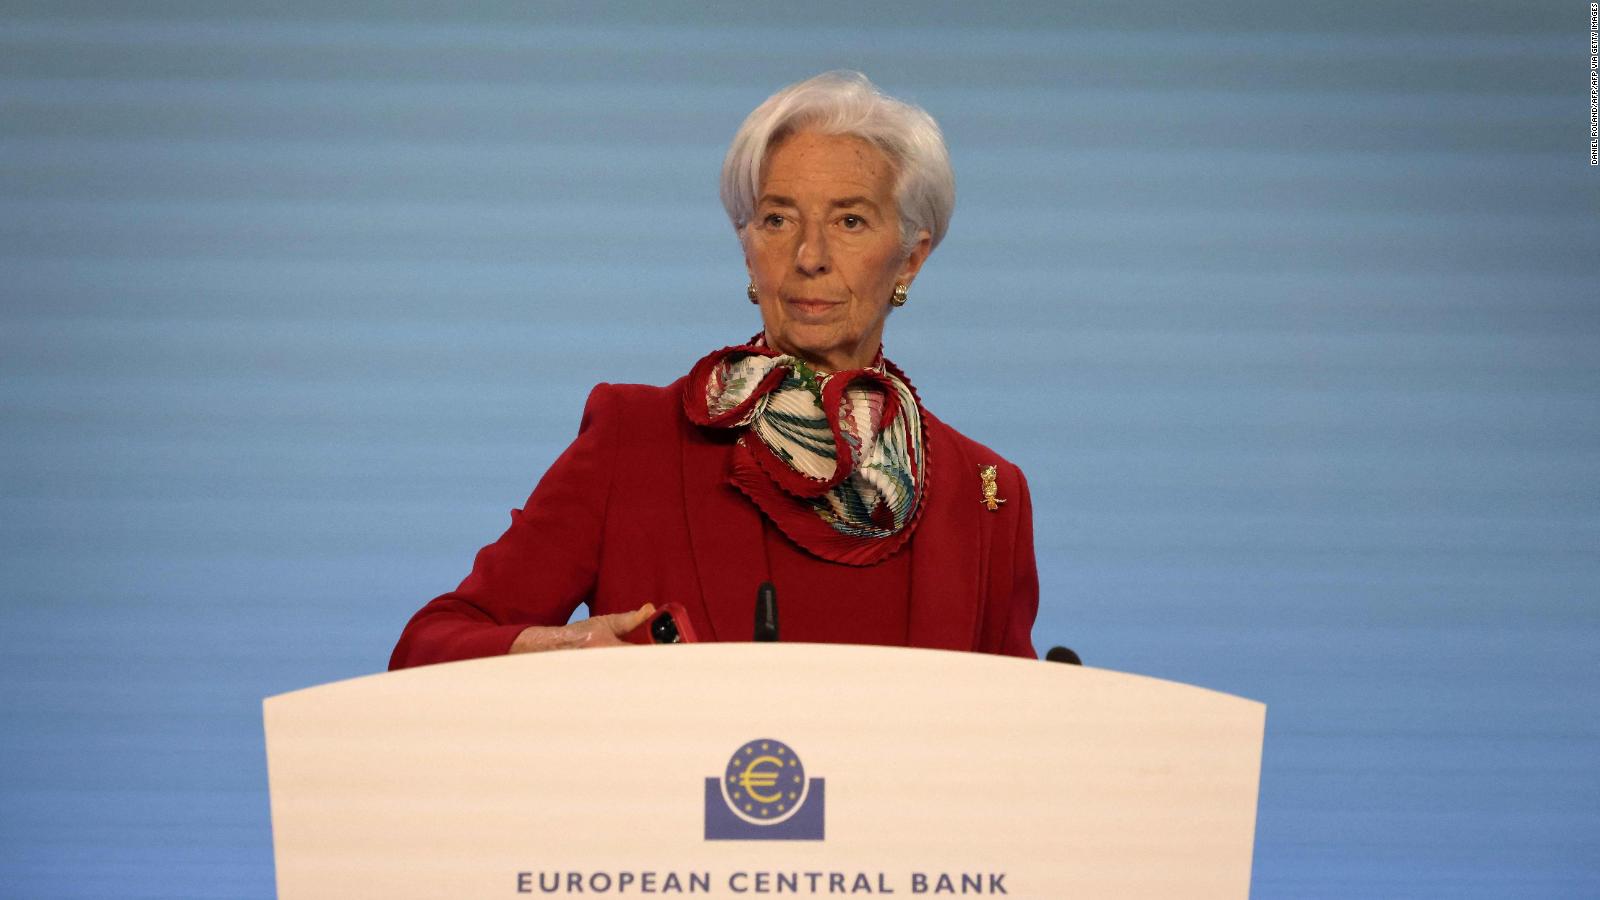 ¿Qué medidas anunció el Banco Central Europeo?  |  Video